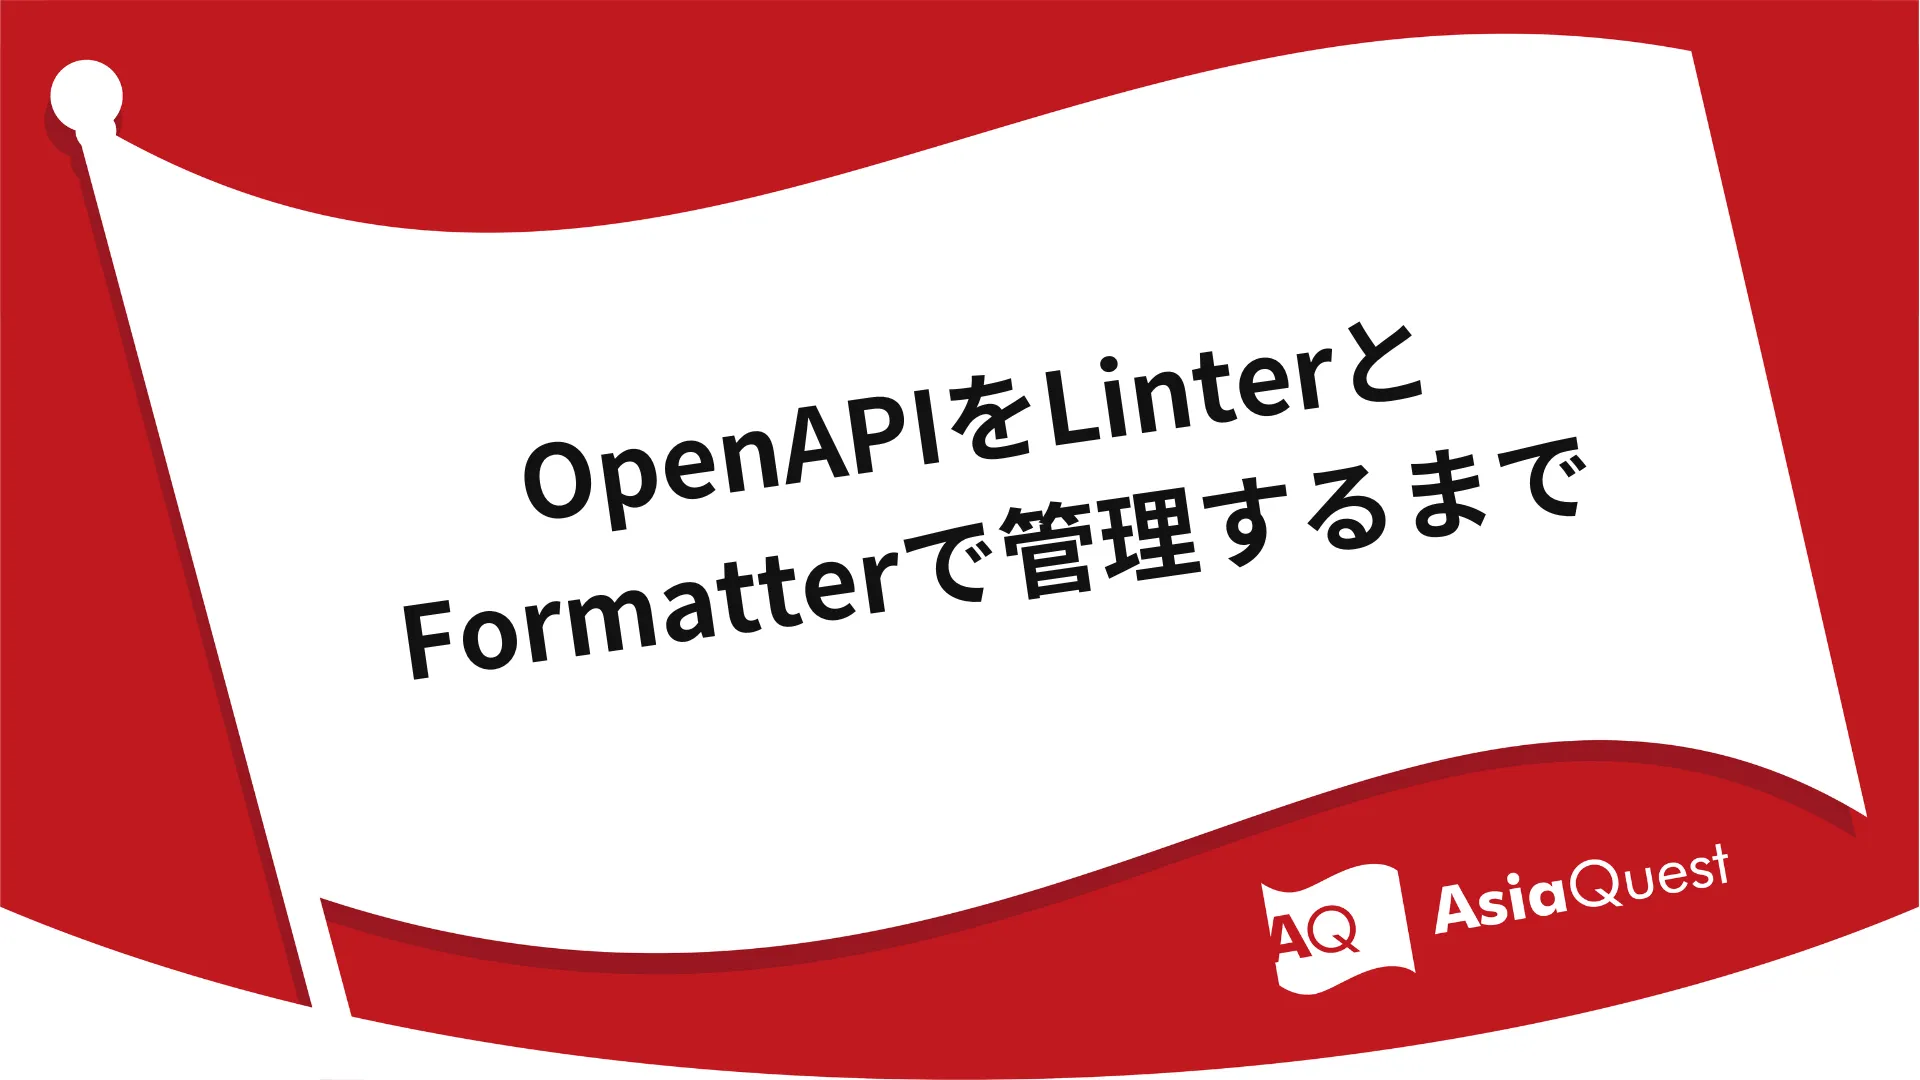 OpenAPIをLinterとFormatterで管理するまで